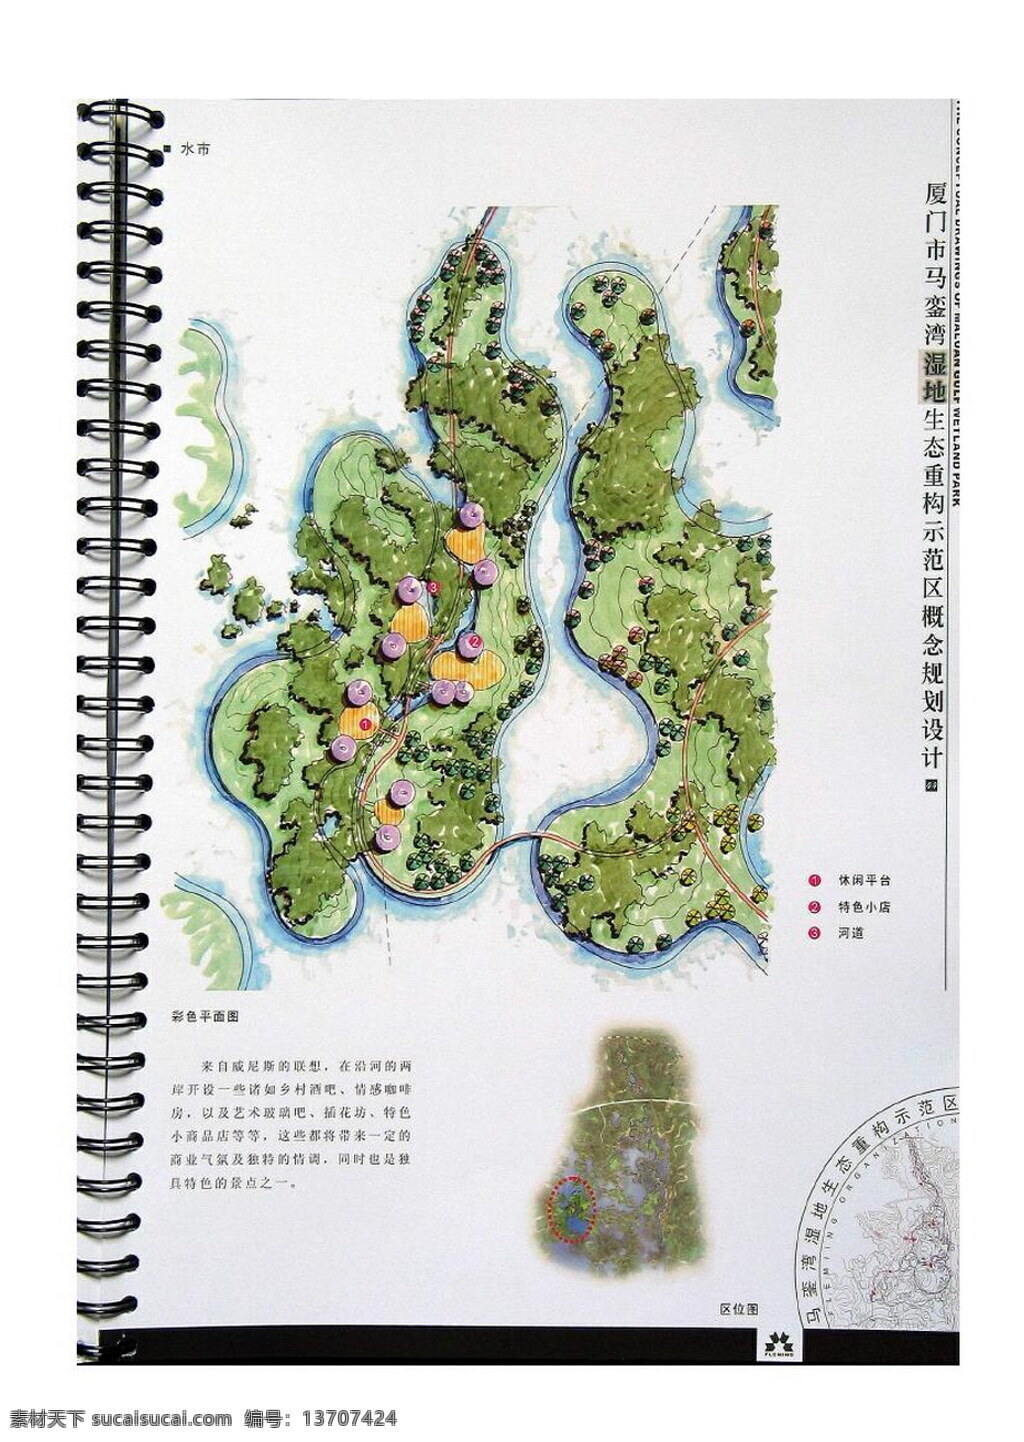 厦门 马銮湾 湿地 生态 重构 示范区 概念性 规划设计 园林 景观 方案文本 滨 水 规划 白色